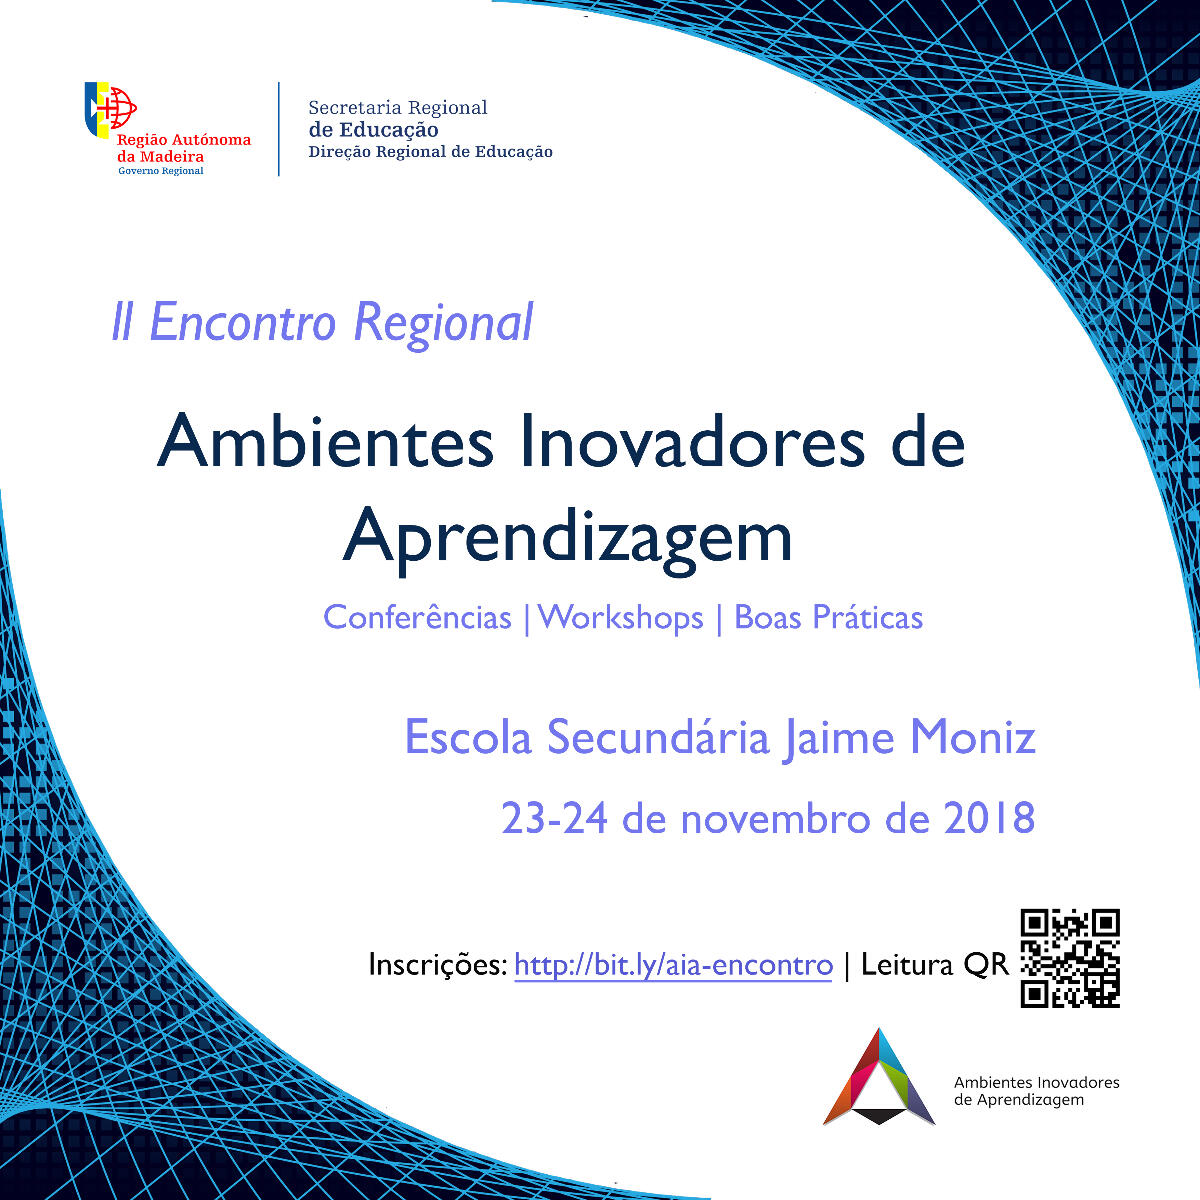 II Encontro Regional dos Ambientes Inovadores de Aprendizagem - 23 e 24 de Novembro